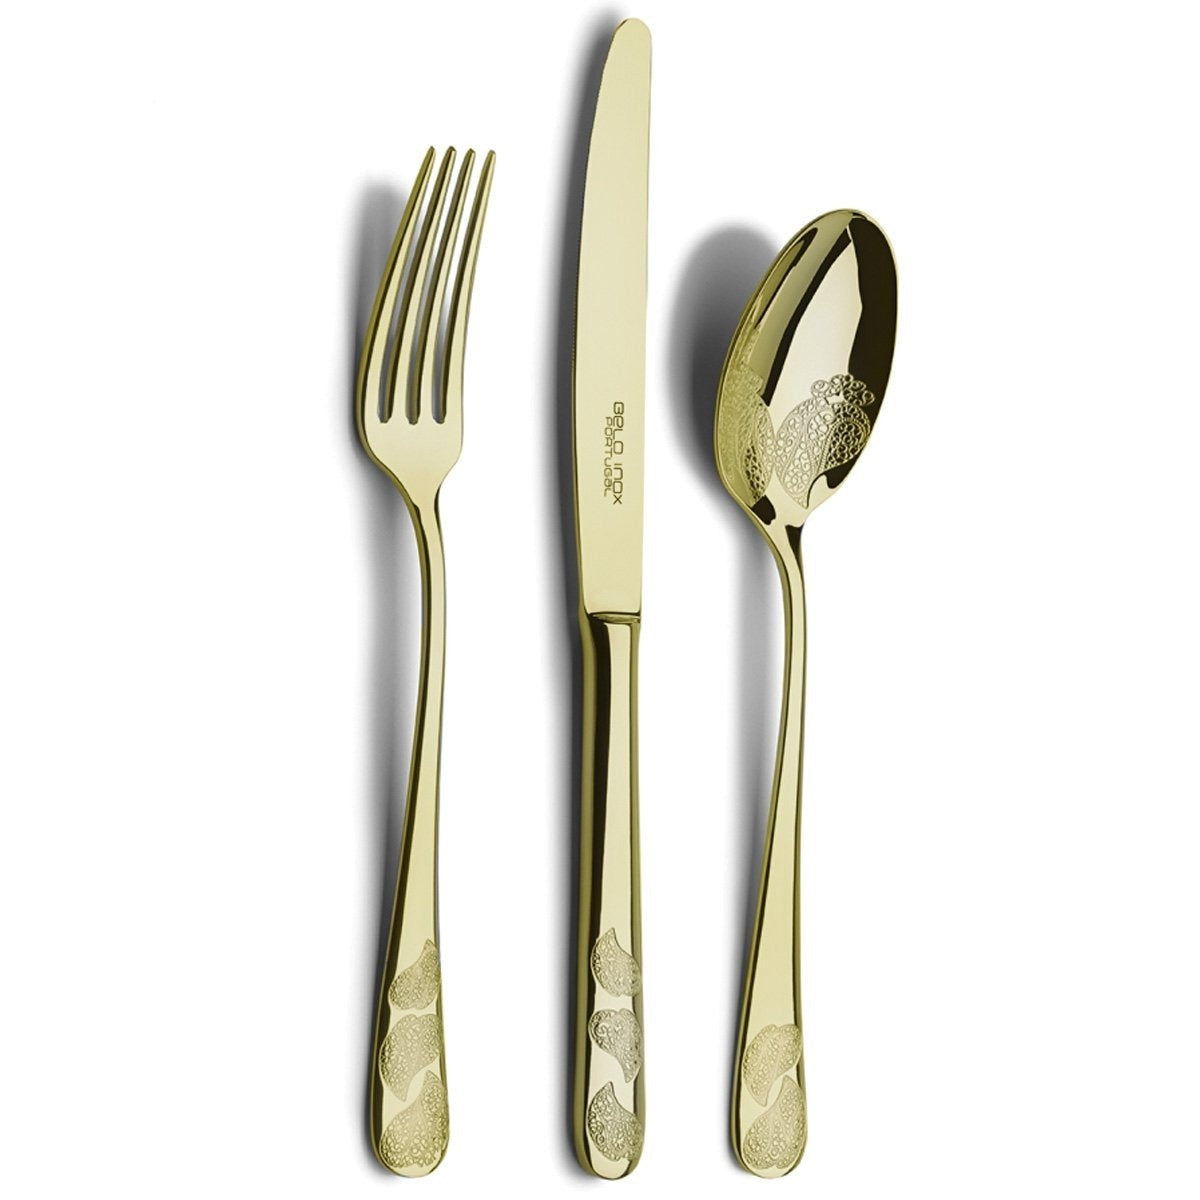 Belo Inox Vianna Gold 24 Pieces Cutlery Set